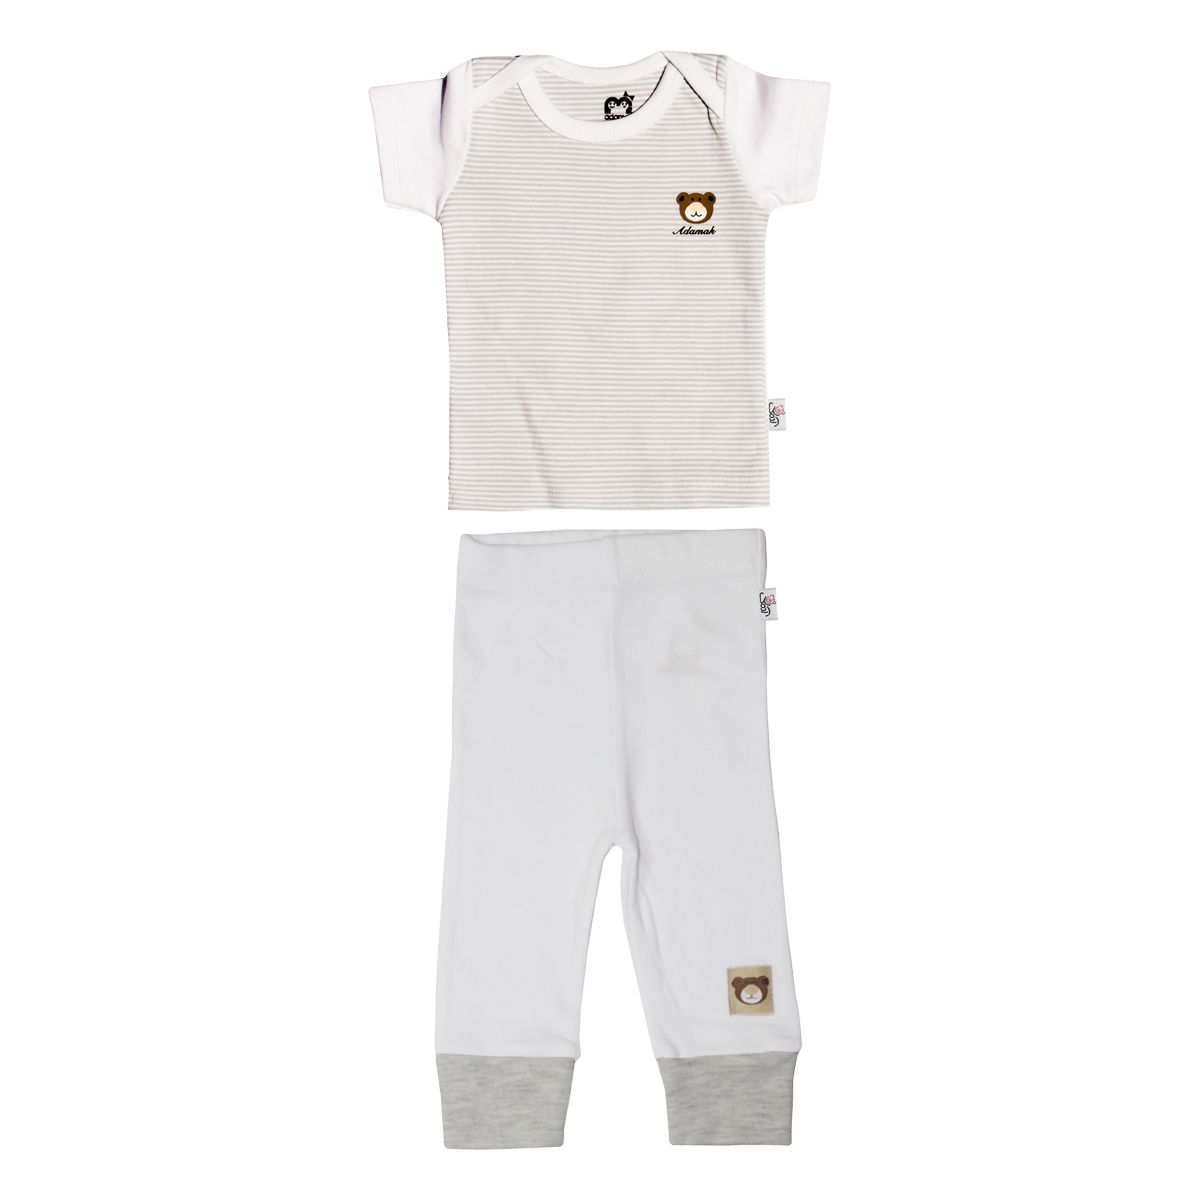 ست تی شرت و شلوار نوزادی آدمک طرح راه راه کد 2-152088 رنگ طوسی -  - 2